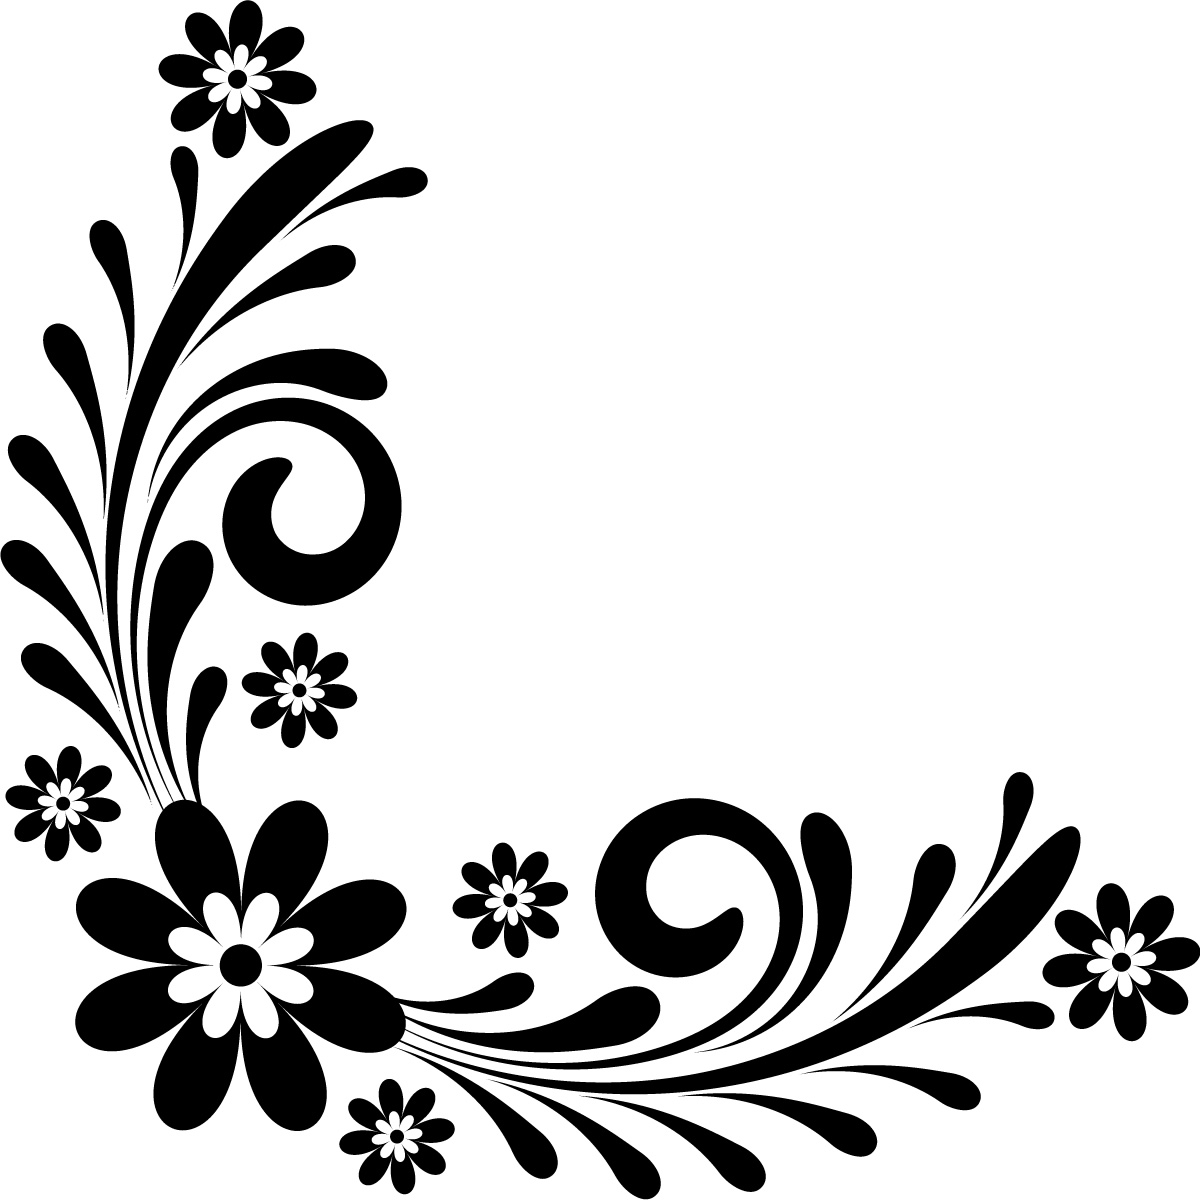 Flower Border Design Clip Art Images - Border Floral Flower Clip ...